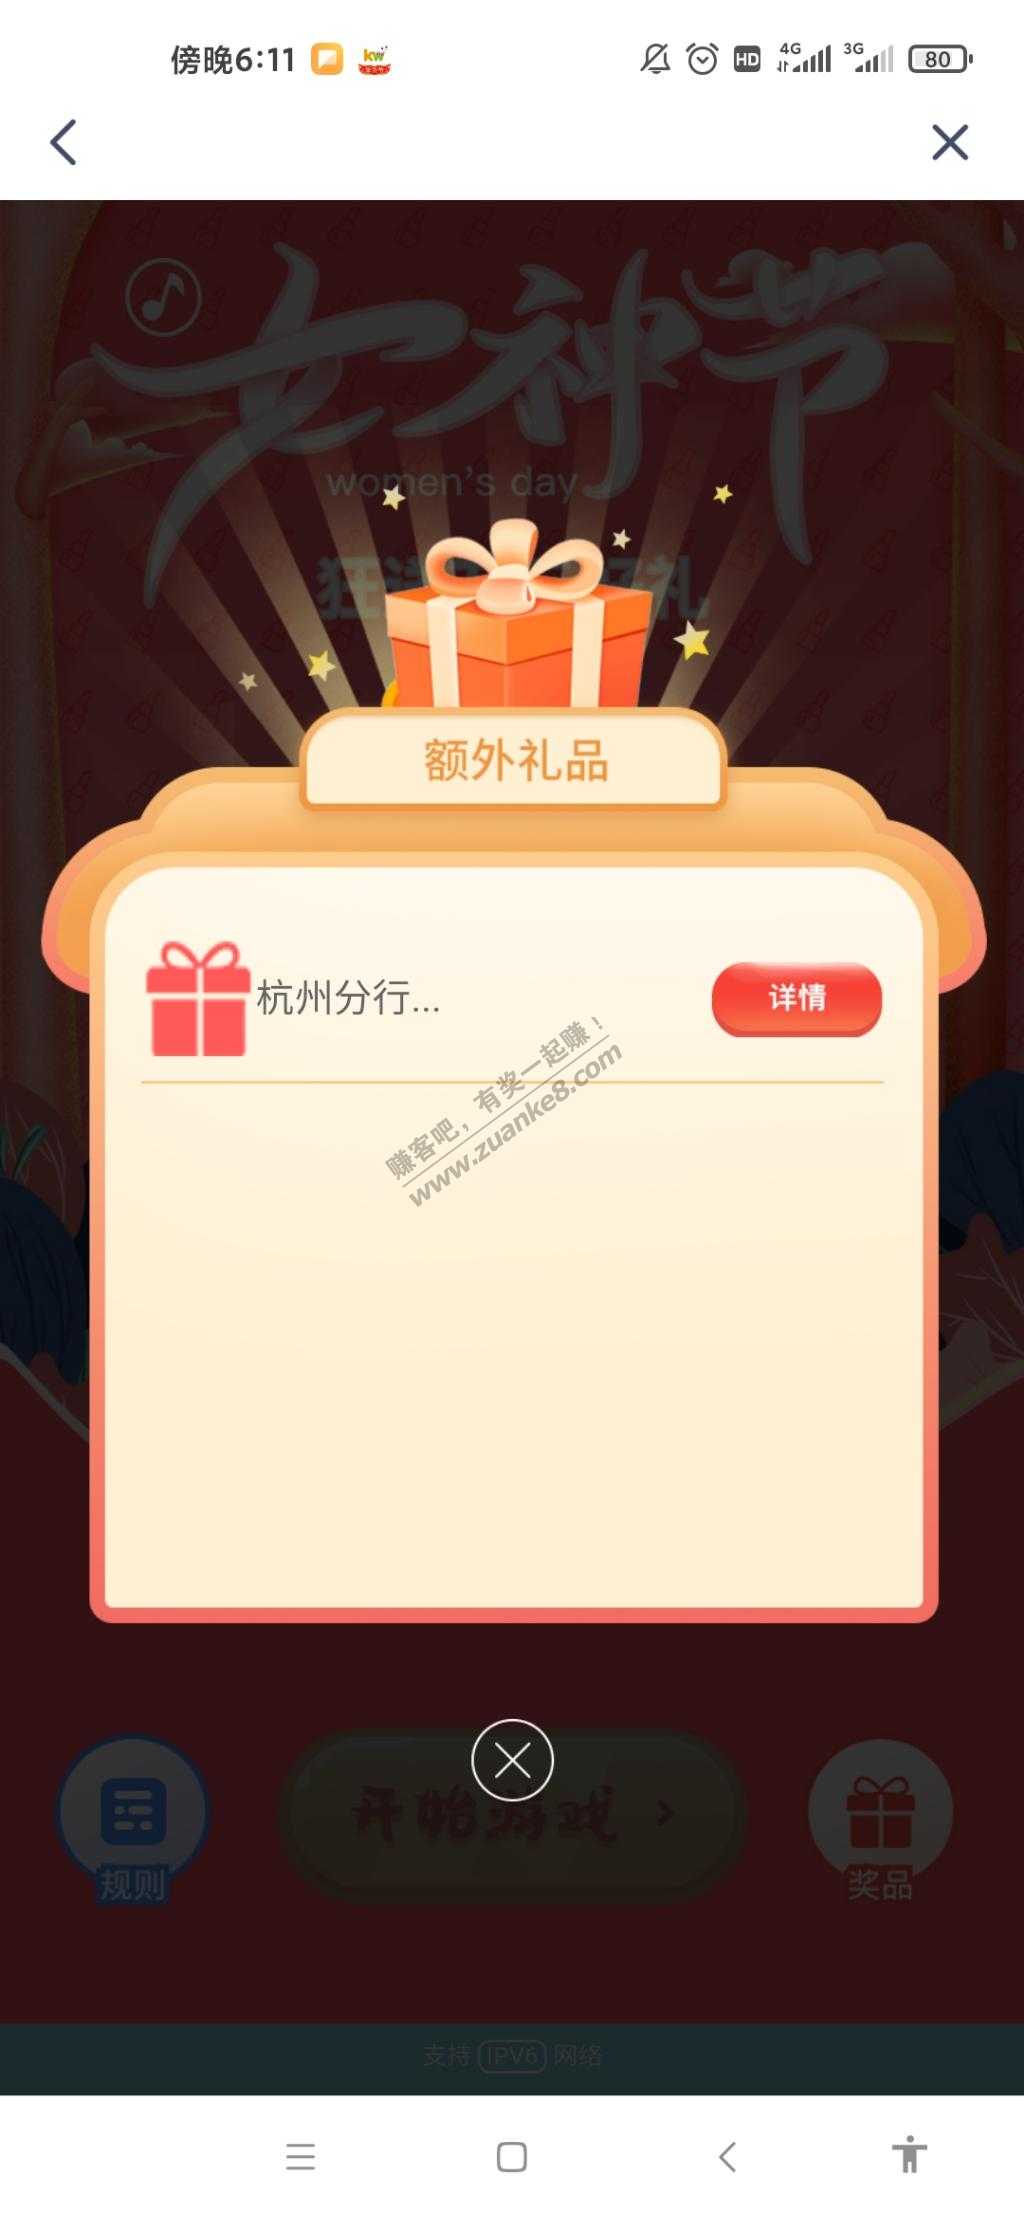 兴业银行app10话费-惠小助(52huixz.com)